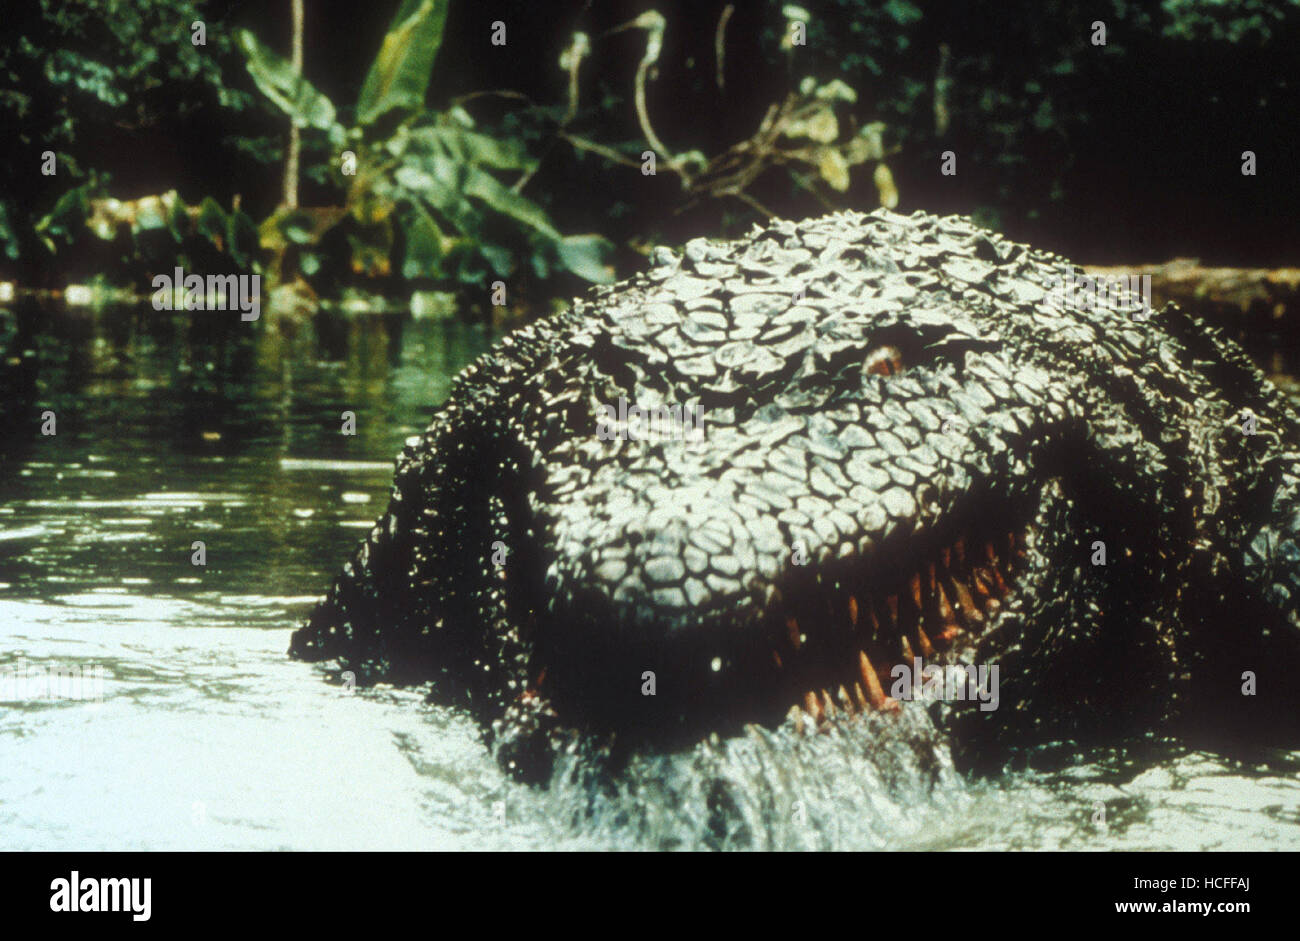 Killer Crocodile 2 (1990)